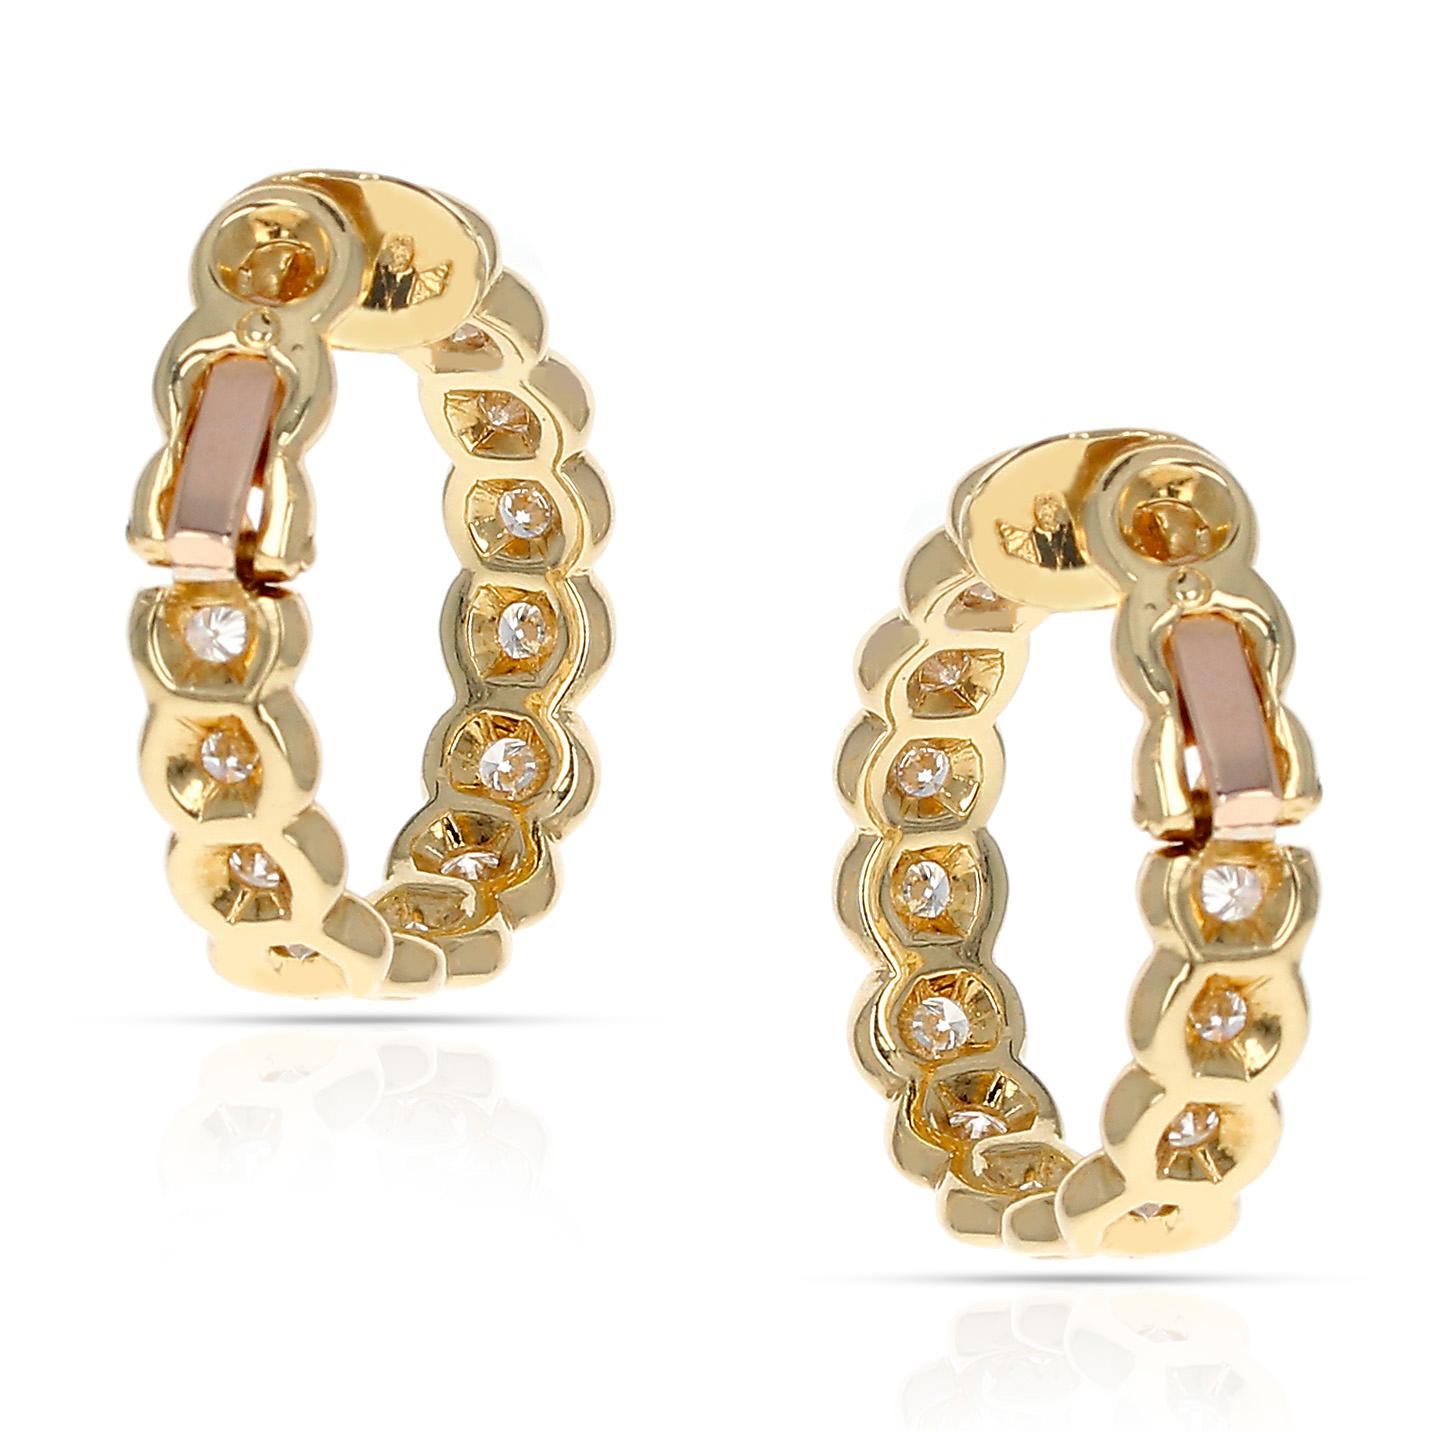 Contemporary Van Cleef & Arpels Diamond and Gold Hoop Earrings